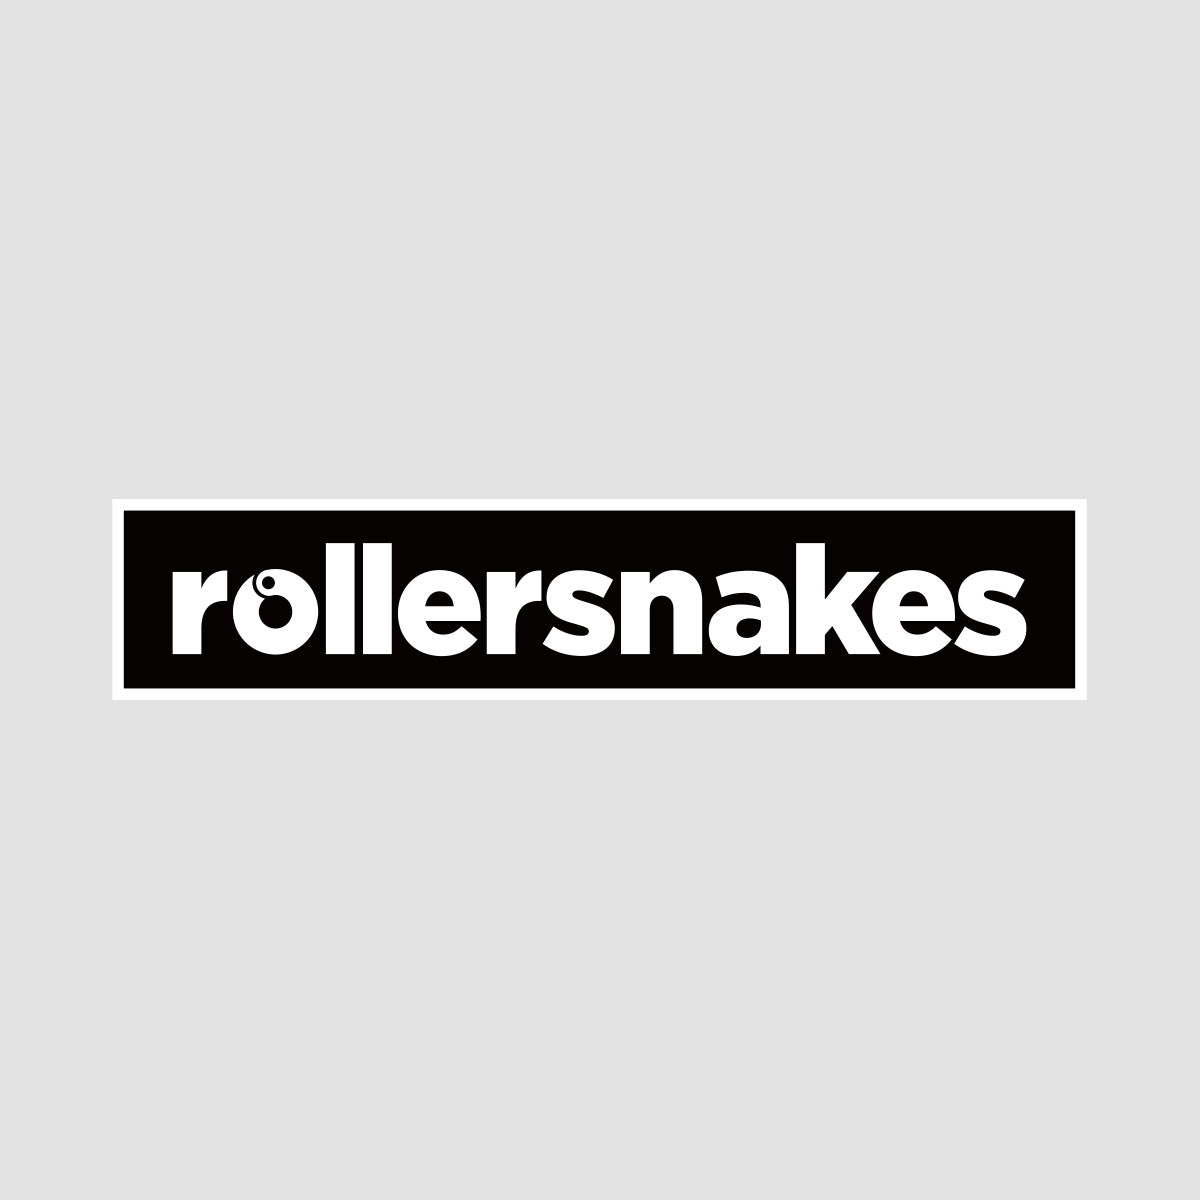 Rollersnakes WordMark Sticker Black 200x41mm